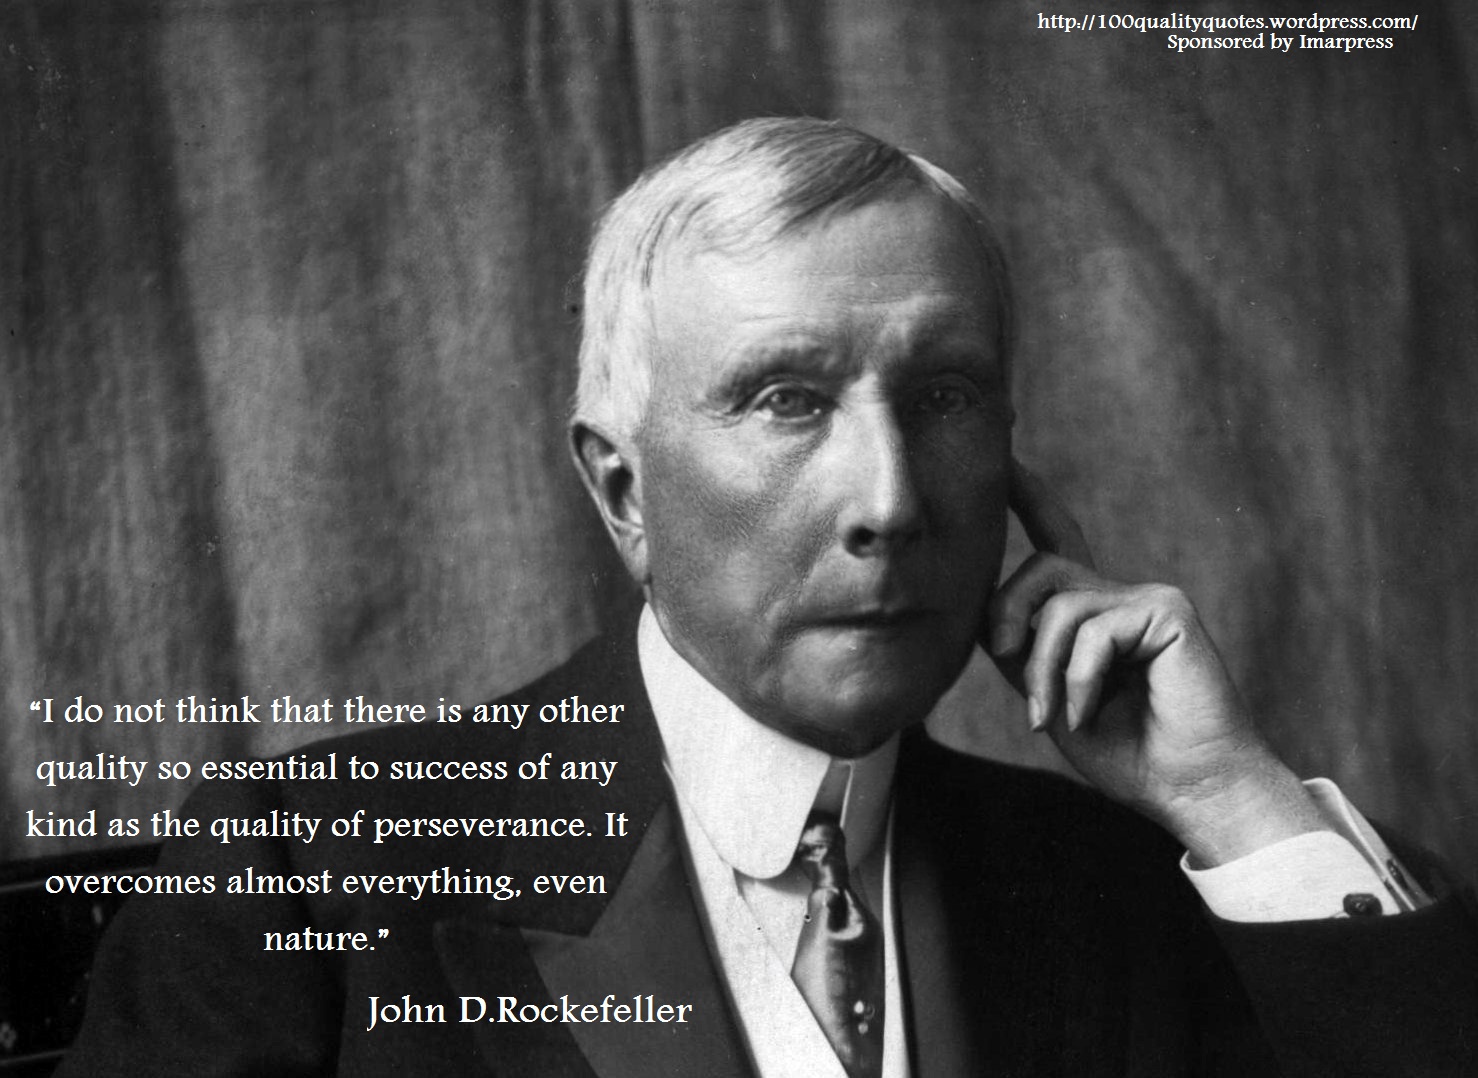 John D. Rockefeller's quote #2